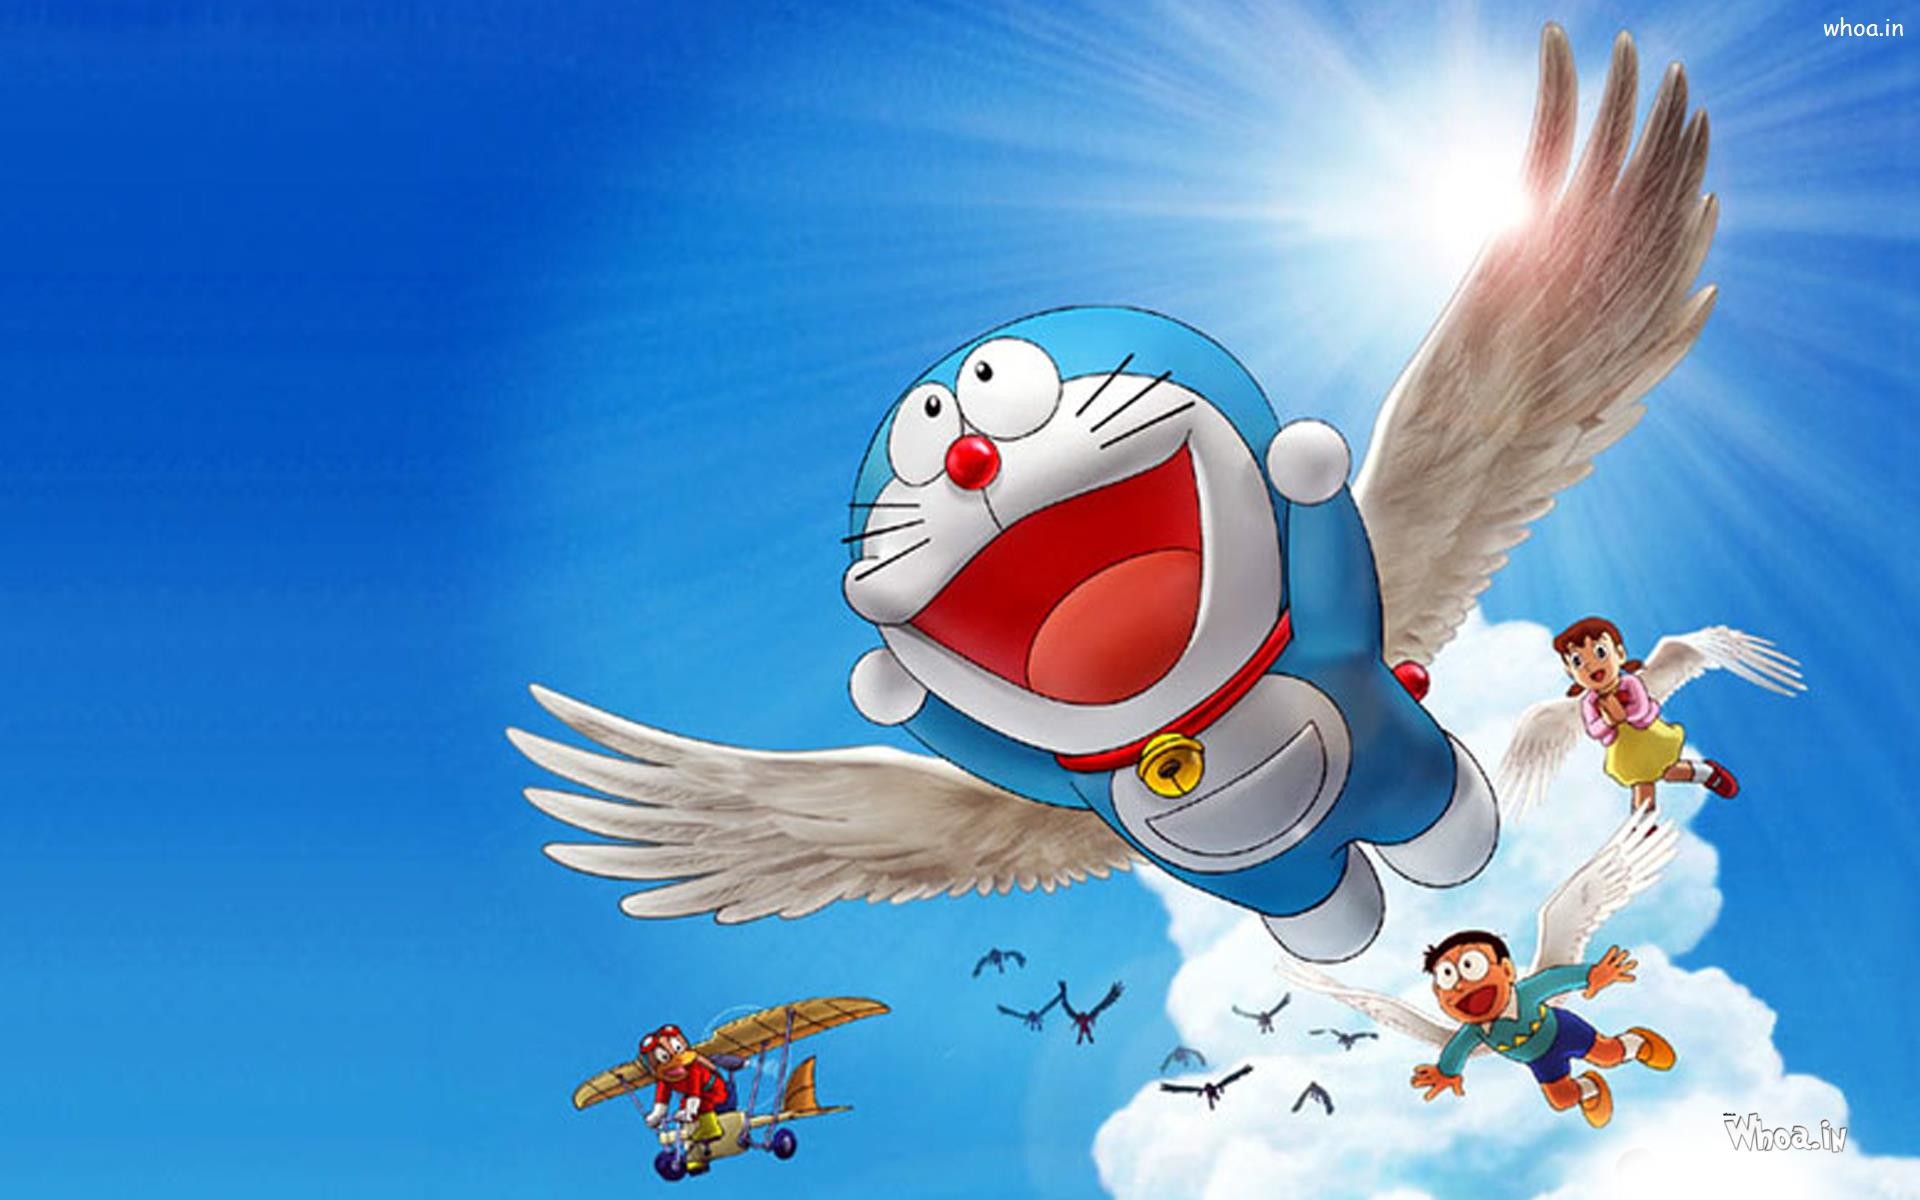 Doraemon và các bạn của cậu nhóc Nobita luôn là tâm điểm thu hút sự chú ý của nhiều người. Hình nền Doraemon và các nhân vật đáng yêu khác sẽ là nét đẹp sáng tạo và tuyệt vời trang trí cho điện thoại của bạn.